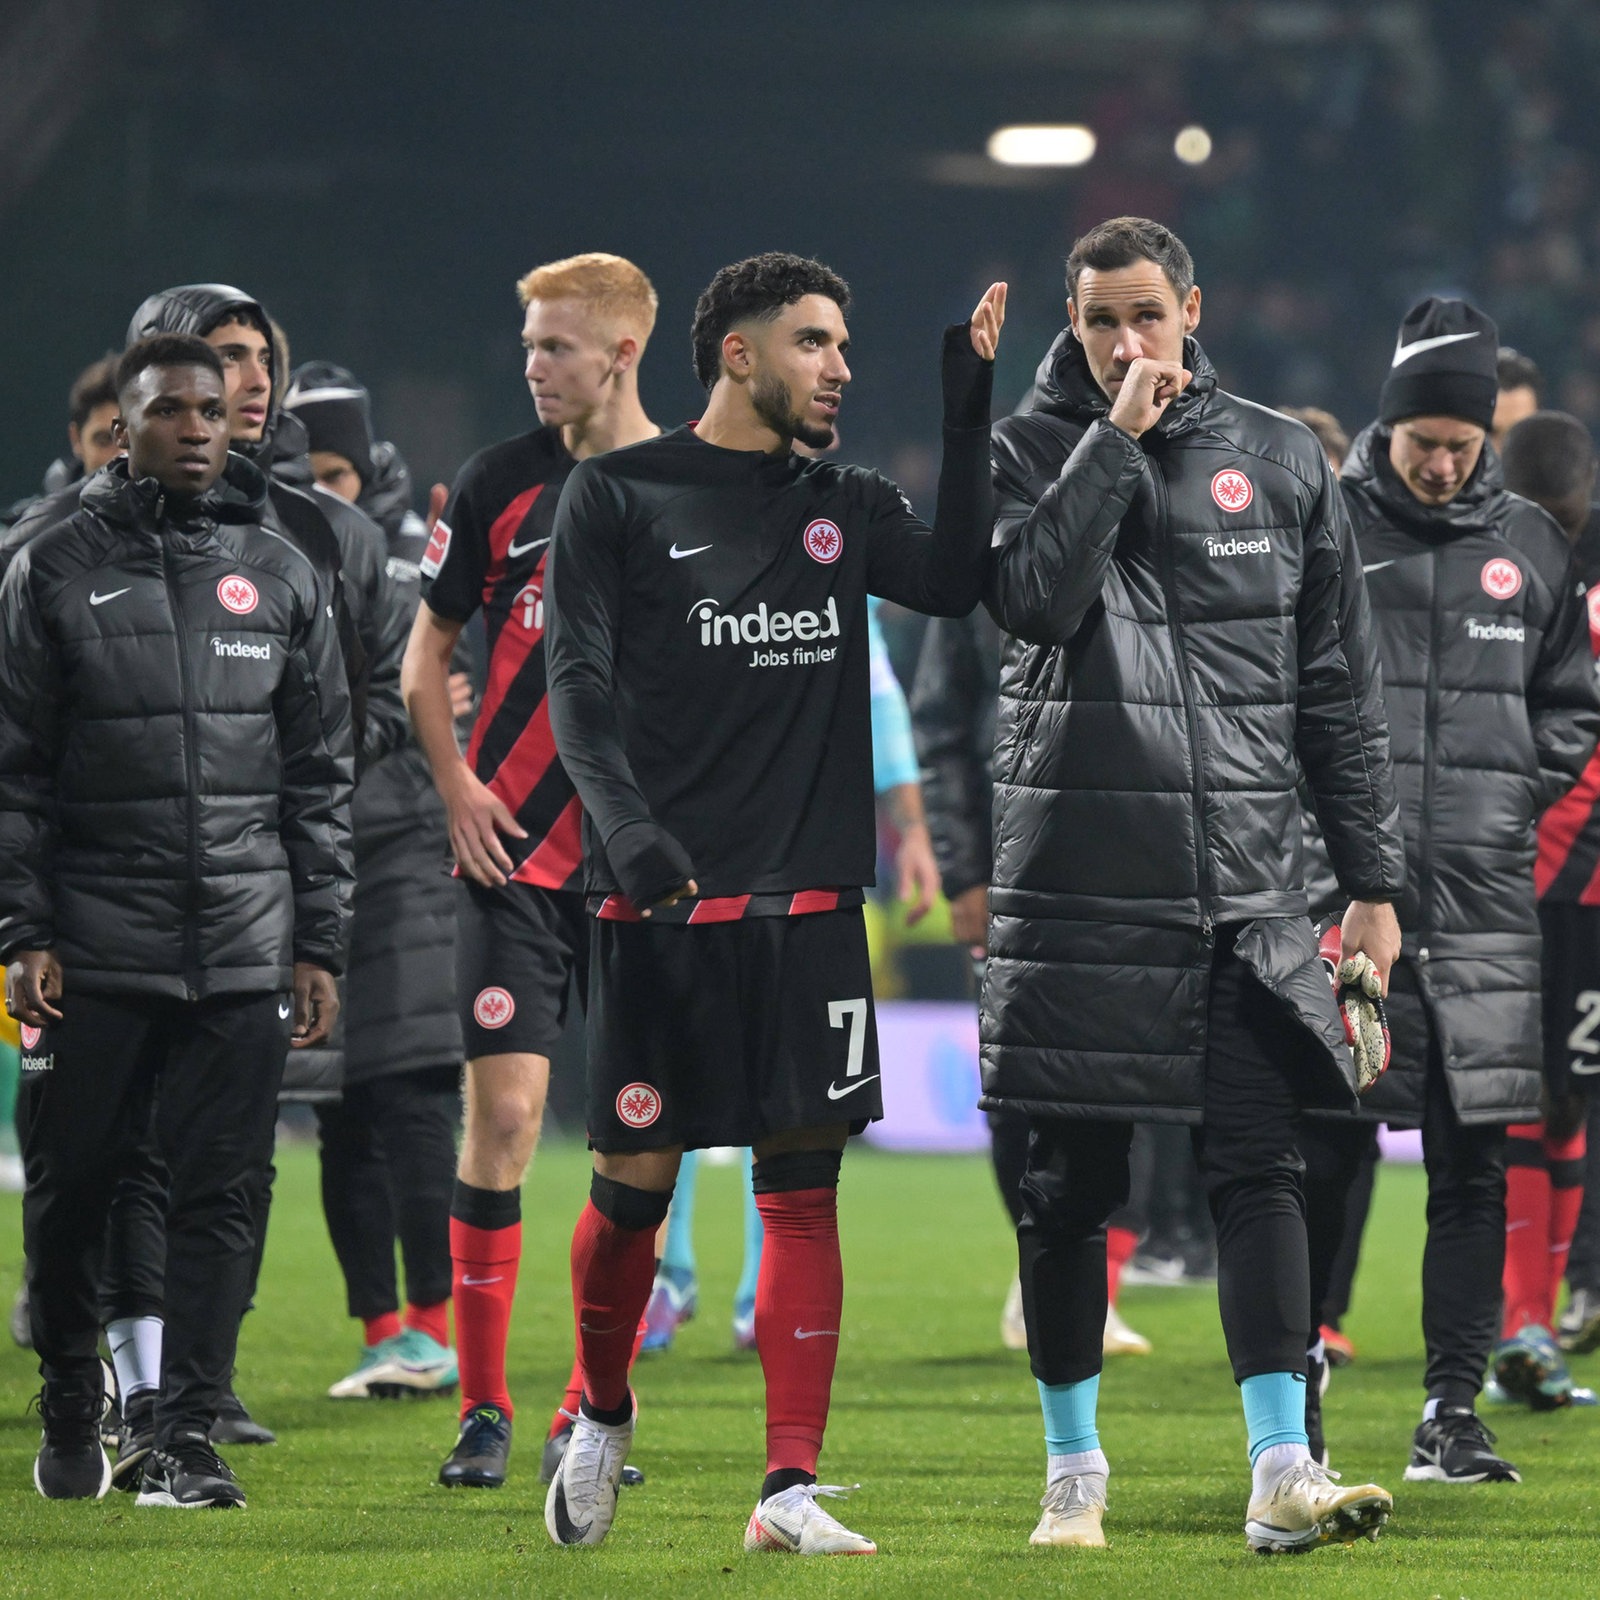 Toppmöller lobt Eintracht nach Remis bei Werder